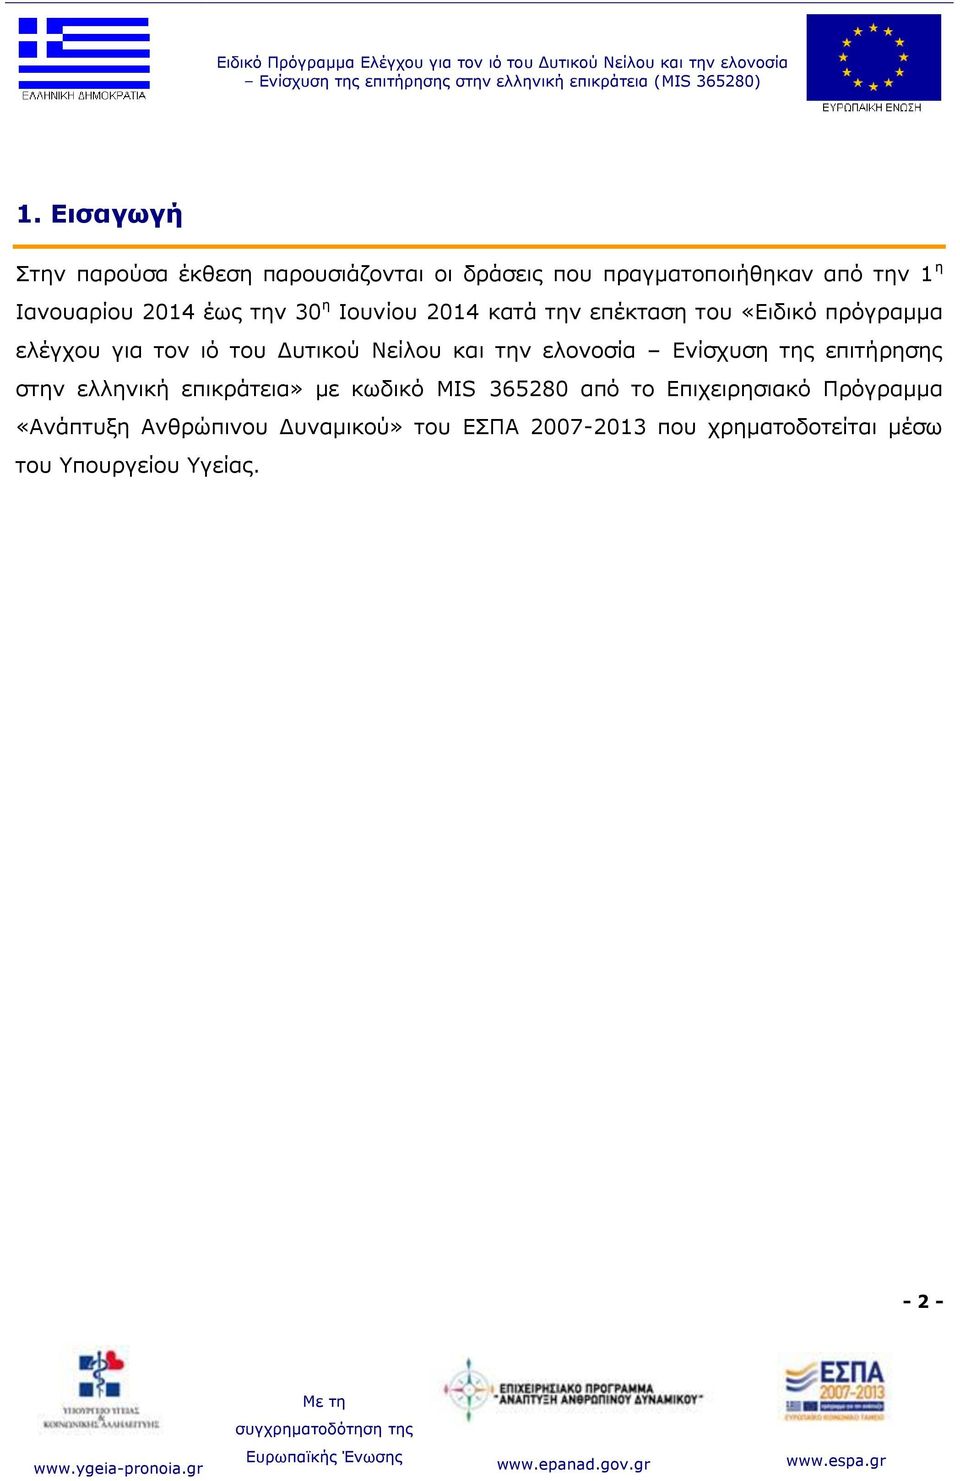 πρόγραμμα ελέγχου για τον ιό του Δυτικού Νείλου και την ελονοσία Ενίσχυση της επιτήρησης στην ελληνική επικράτεια» με κωδικό MIS 365280 από το Επιχειρησιακό Πρόγραμμα